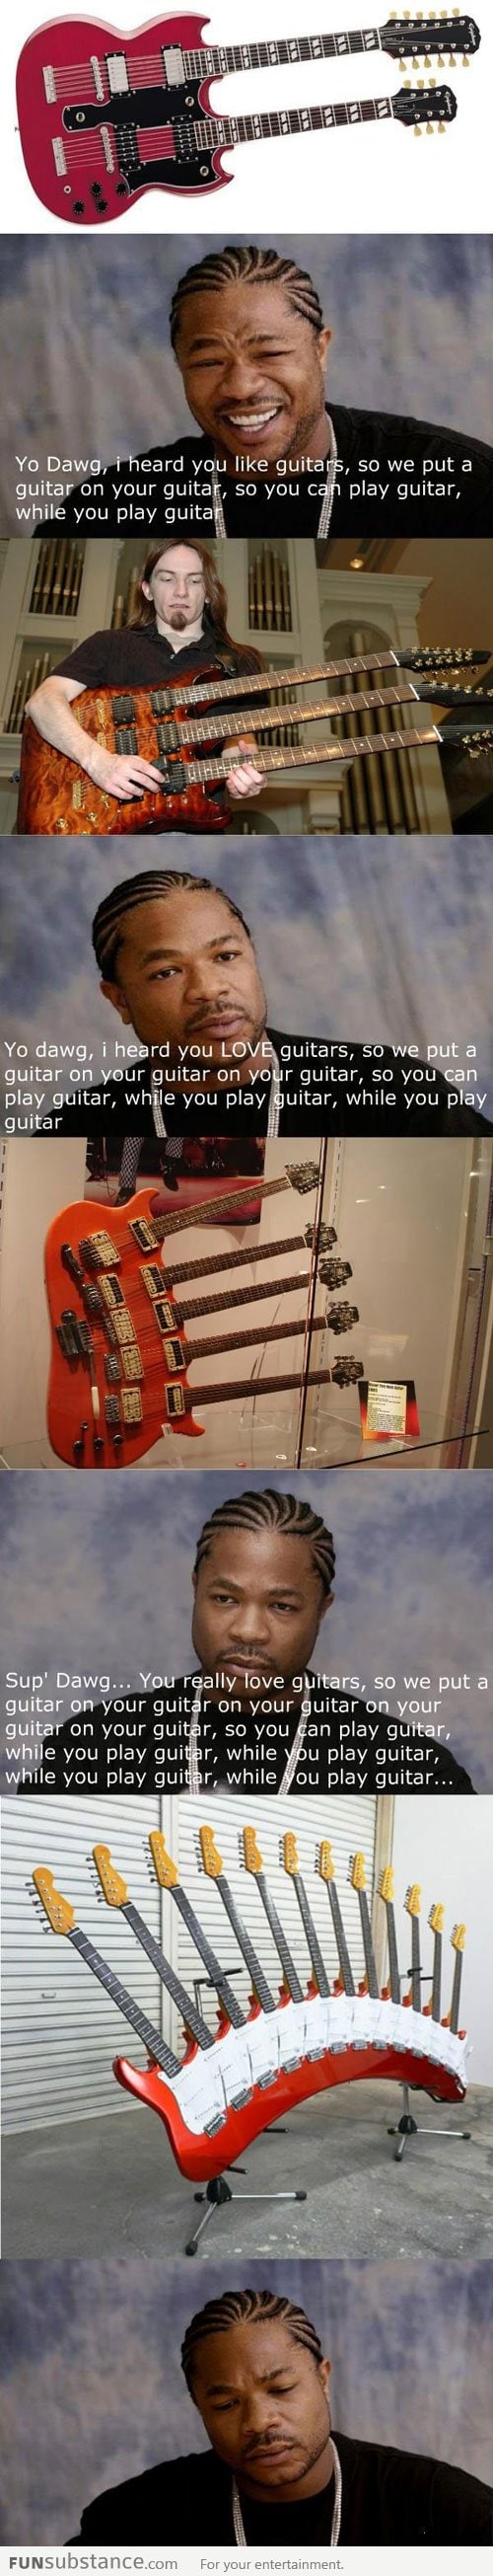 I heard you like guitars